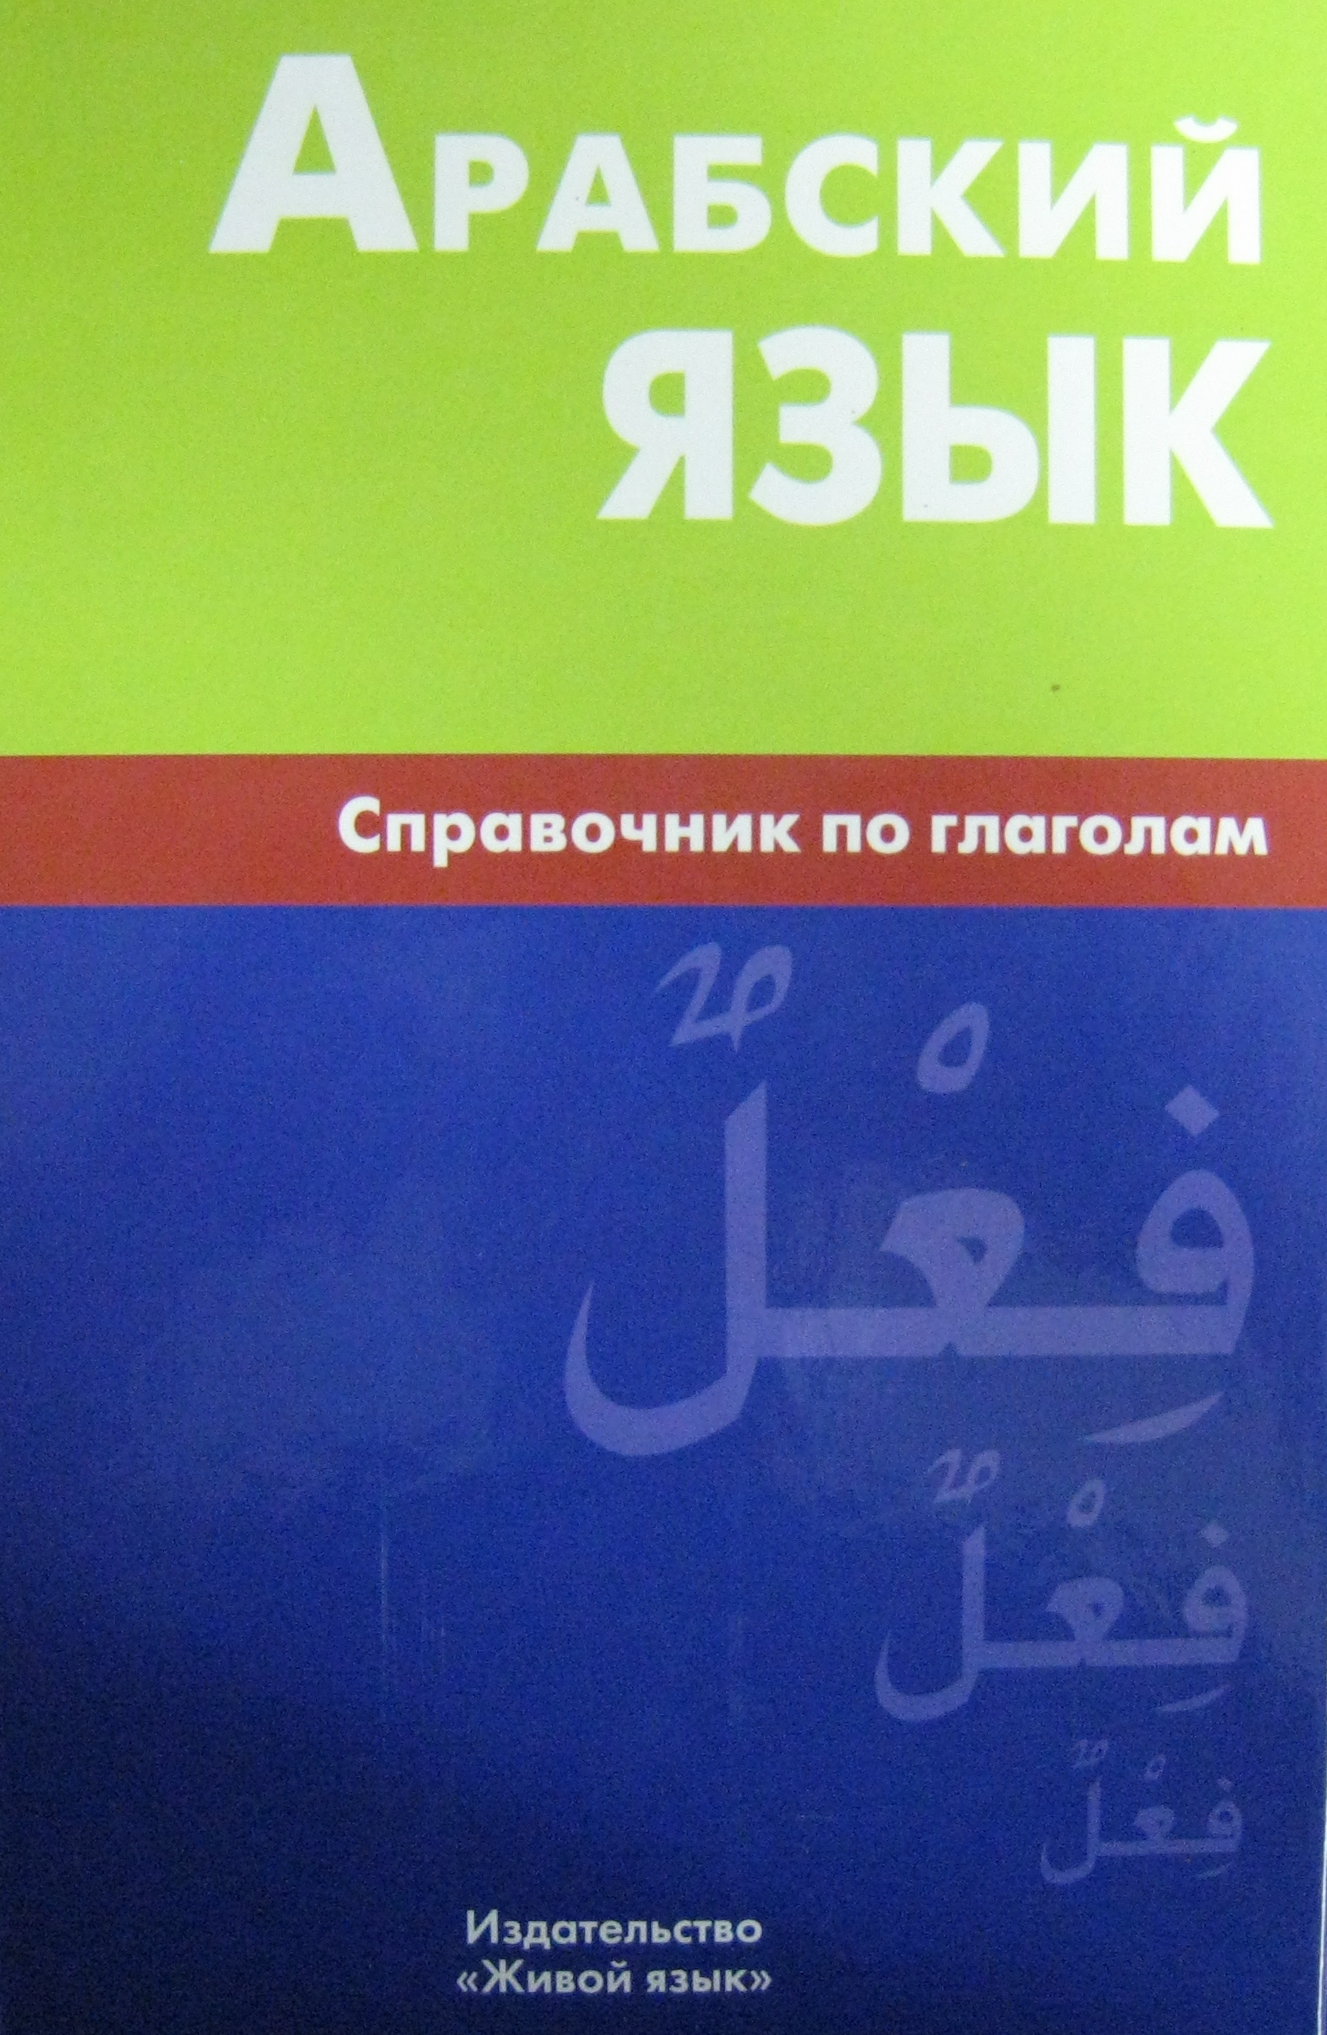 Арабский язык книга скачать